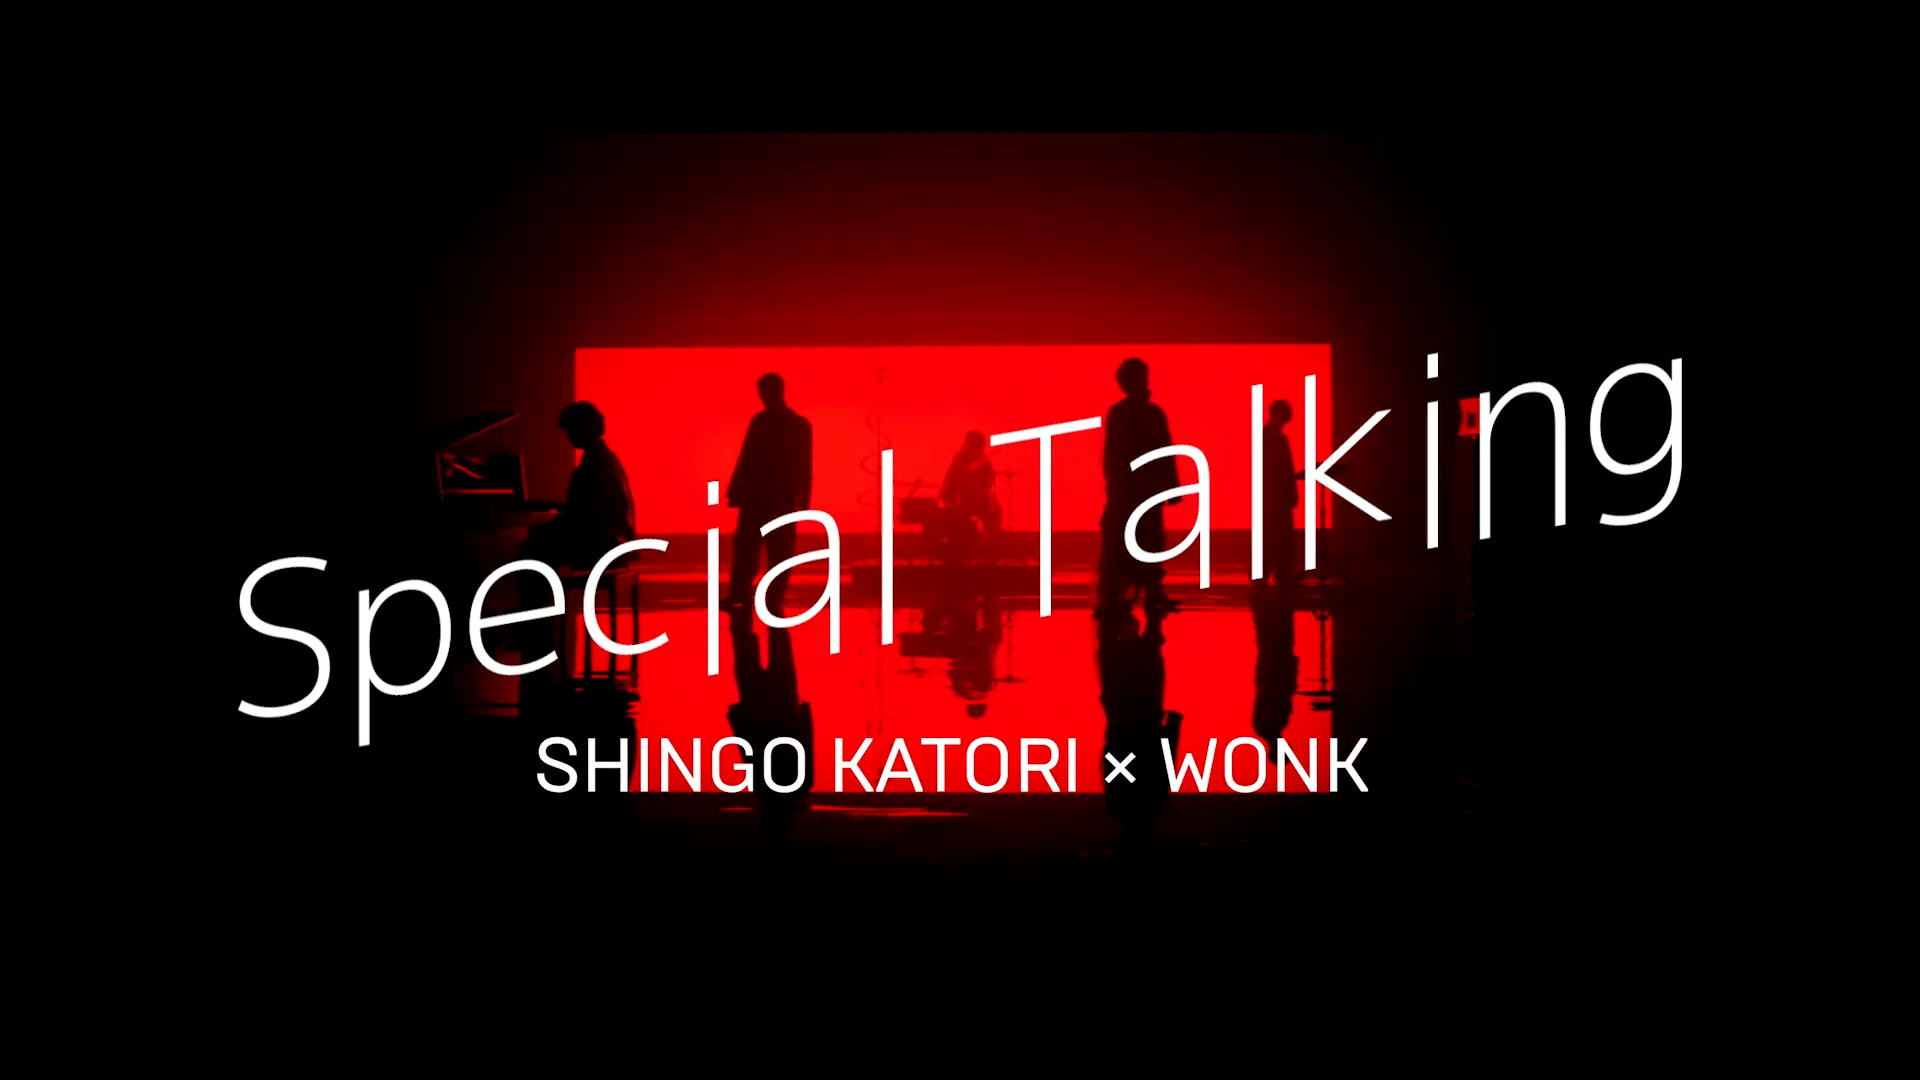 Special Talking（Shingo Katori × WONK）